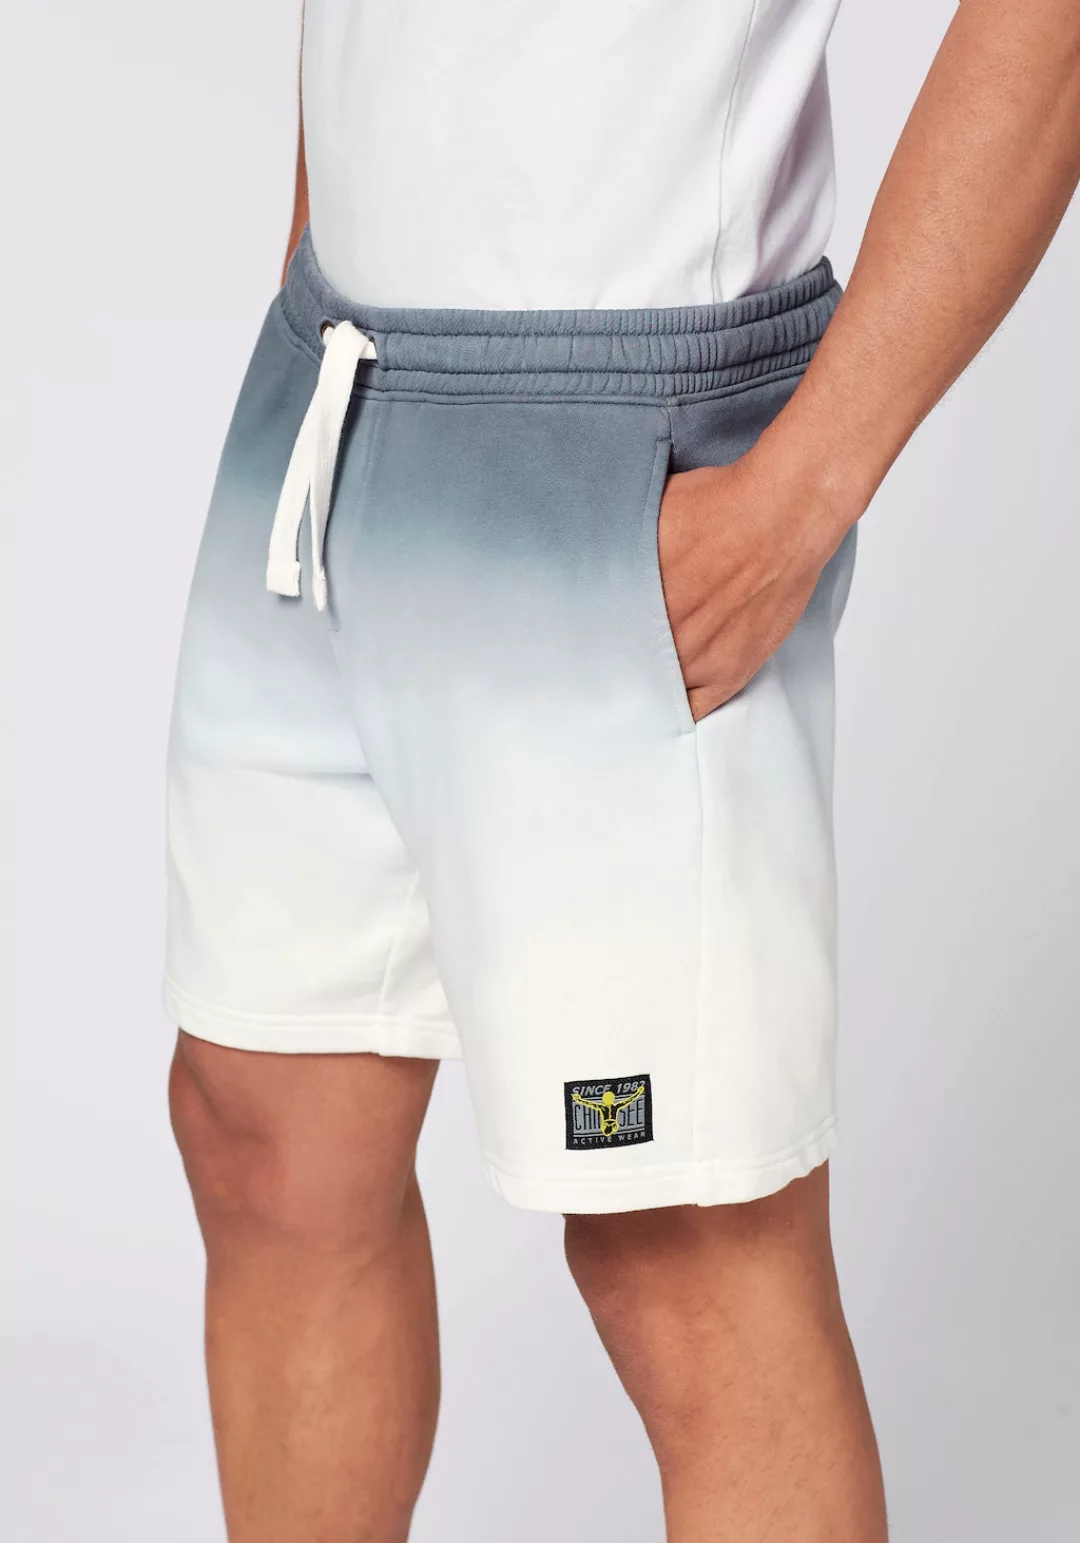 Chiemsee Shorts Bermuda-Shorts mit coolem Farbeffekt 1 günstig online kaufen